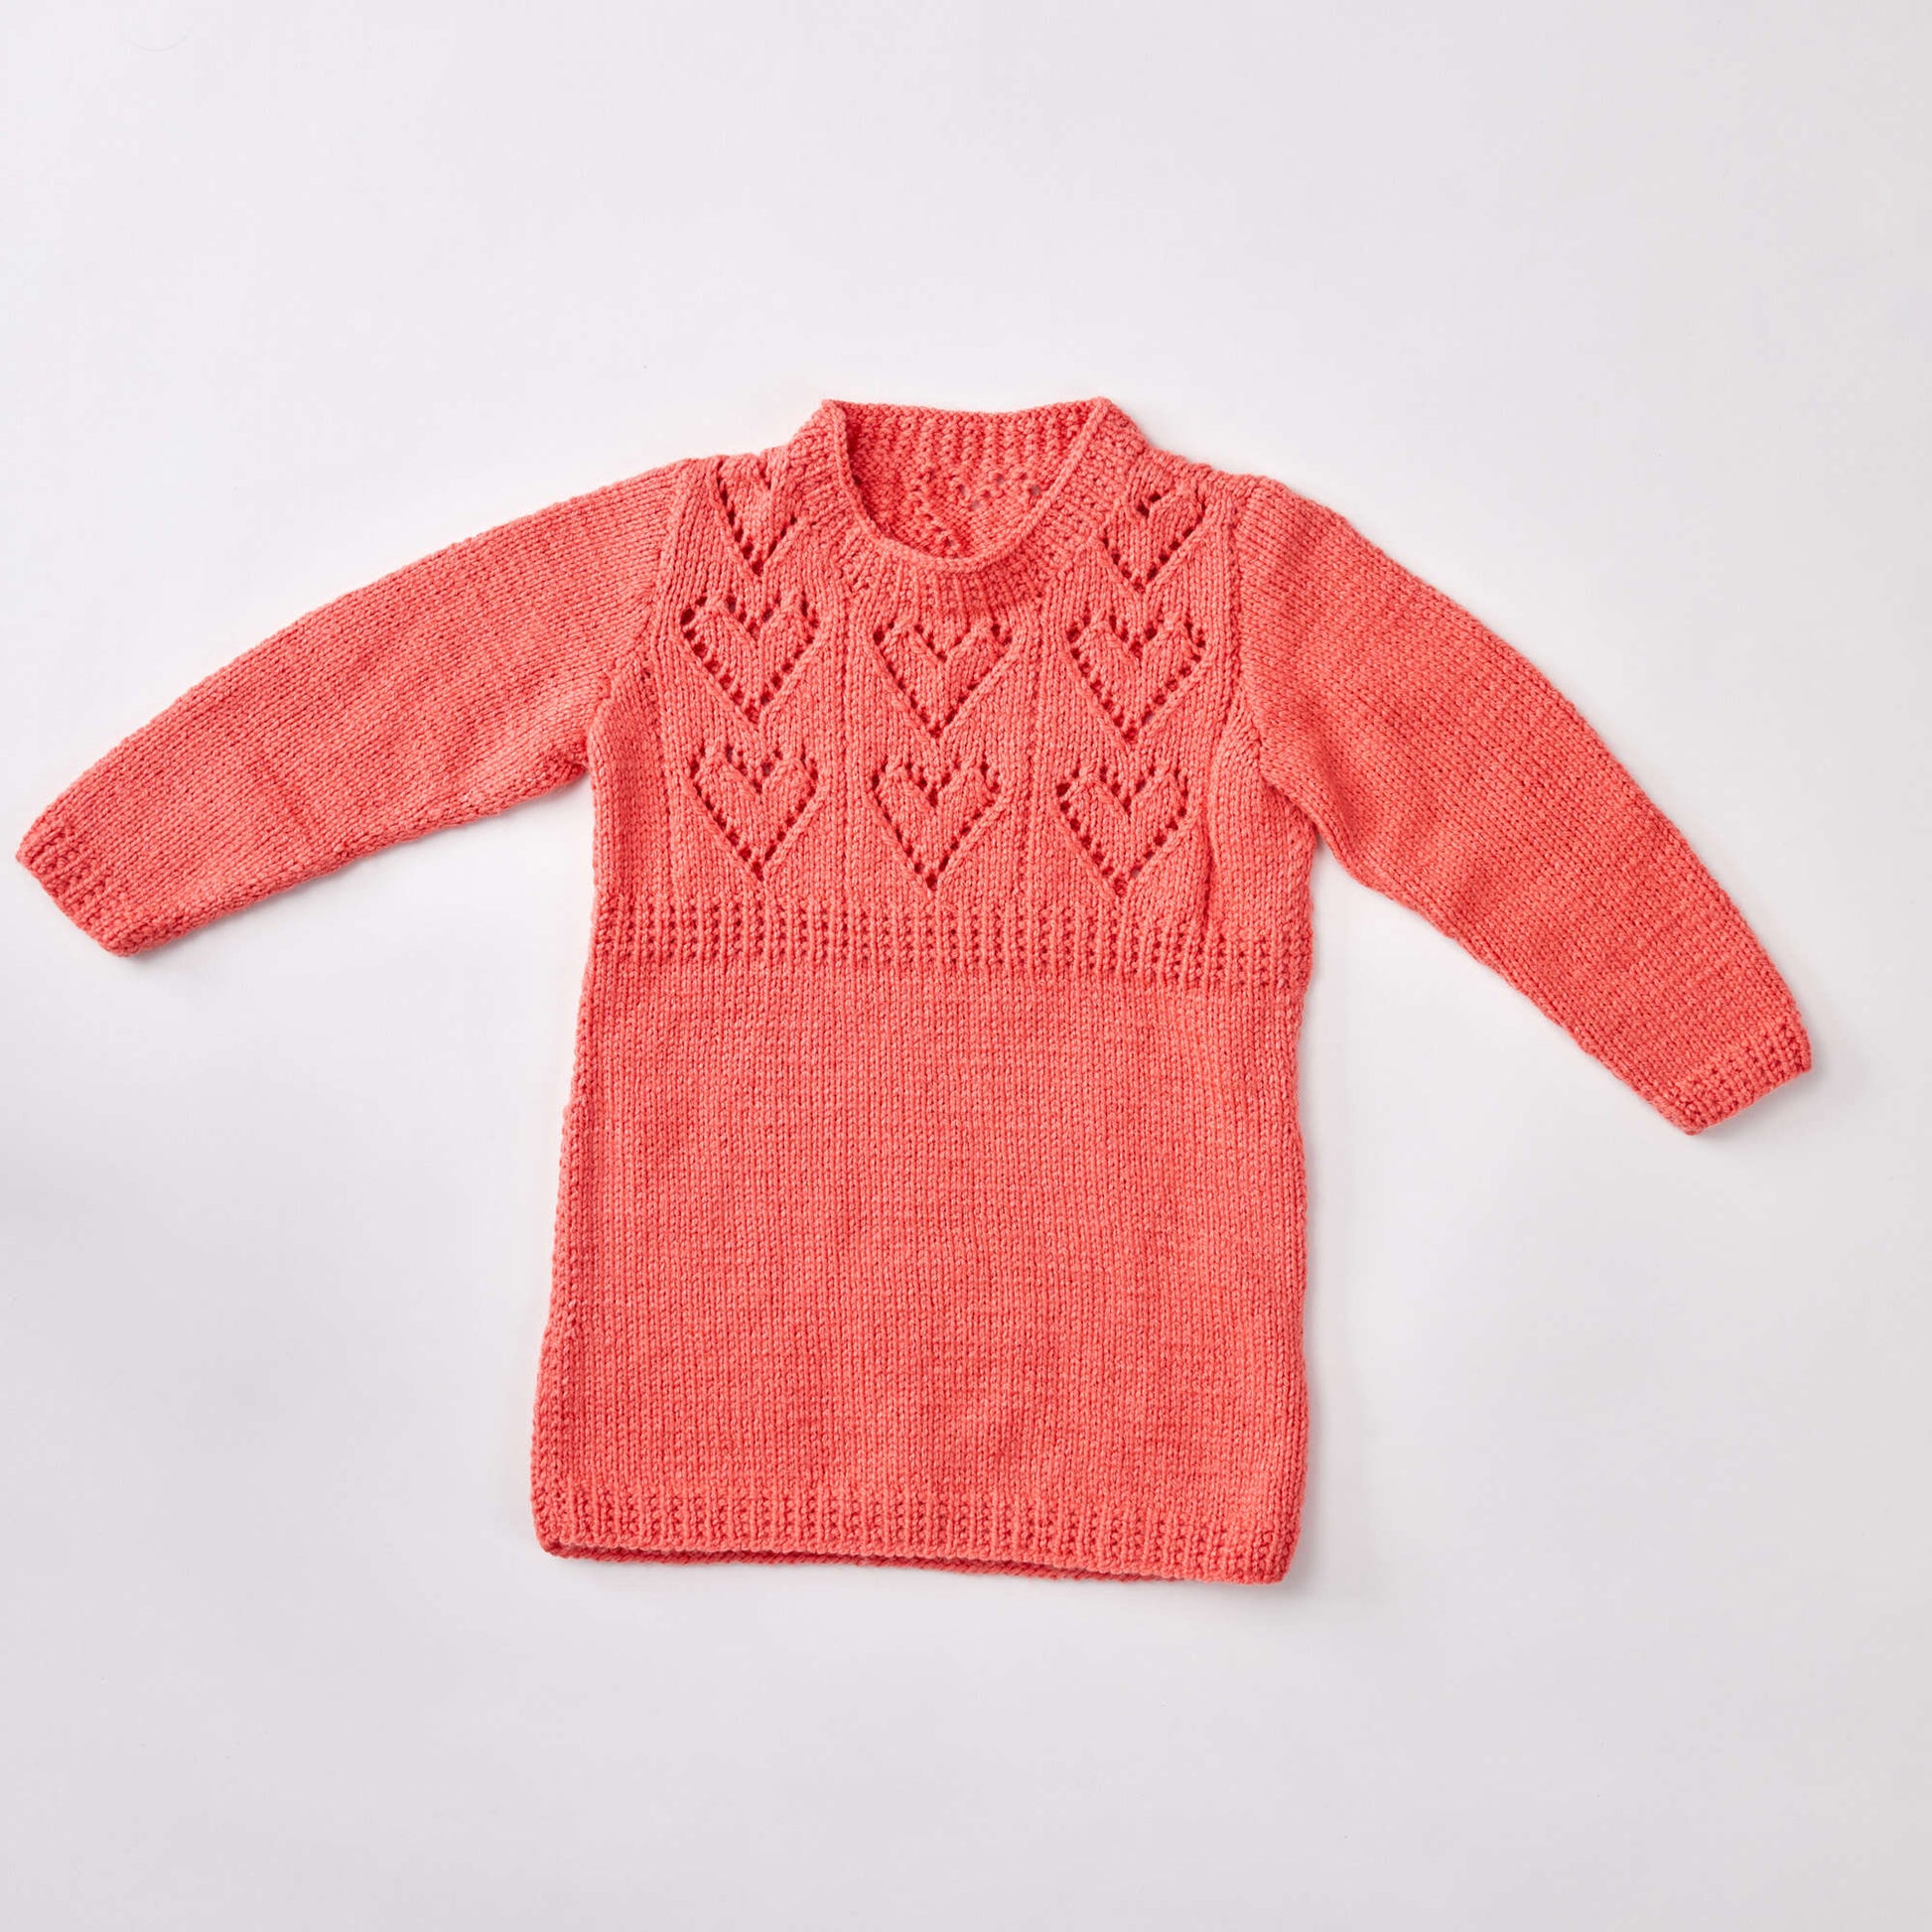 Free Red Heart Knit Child's Heart Yoke Tunic Pattern